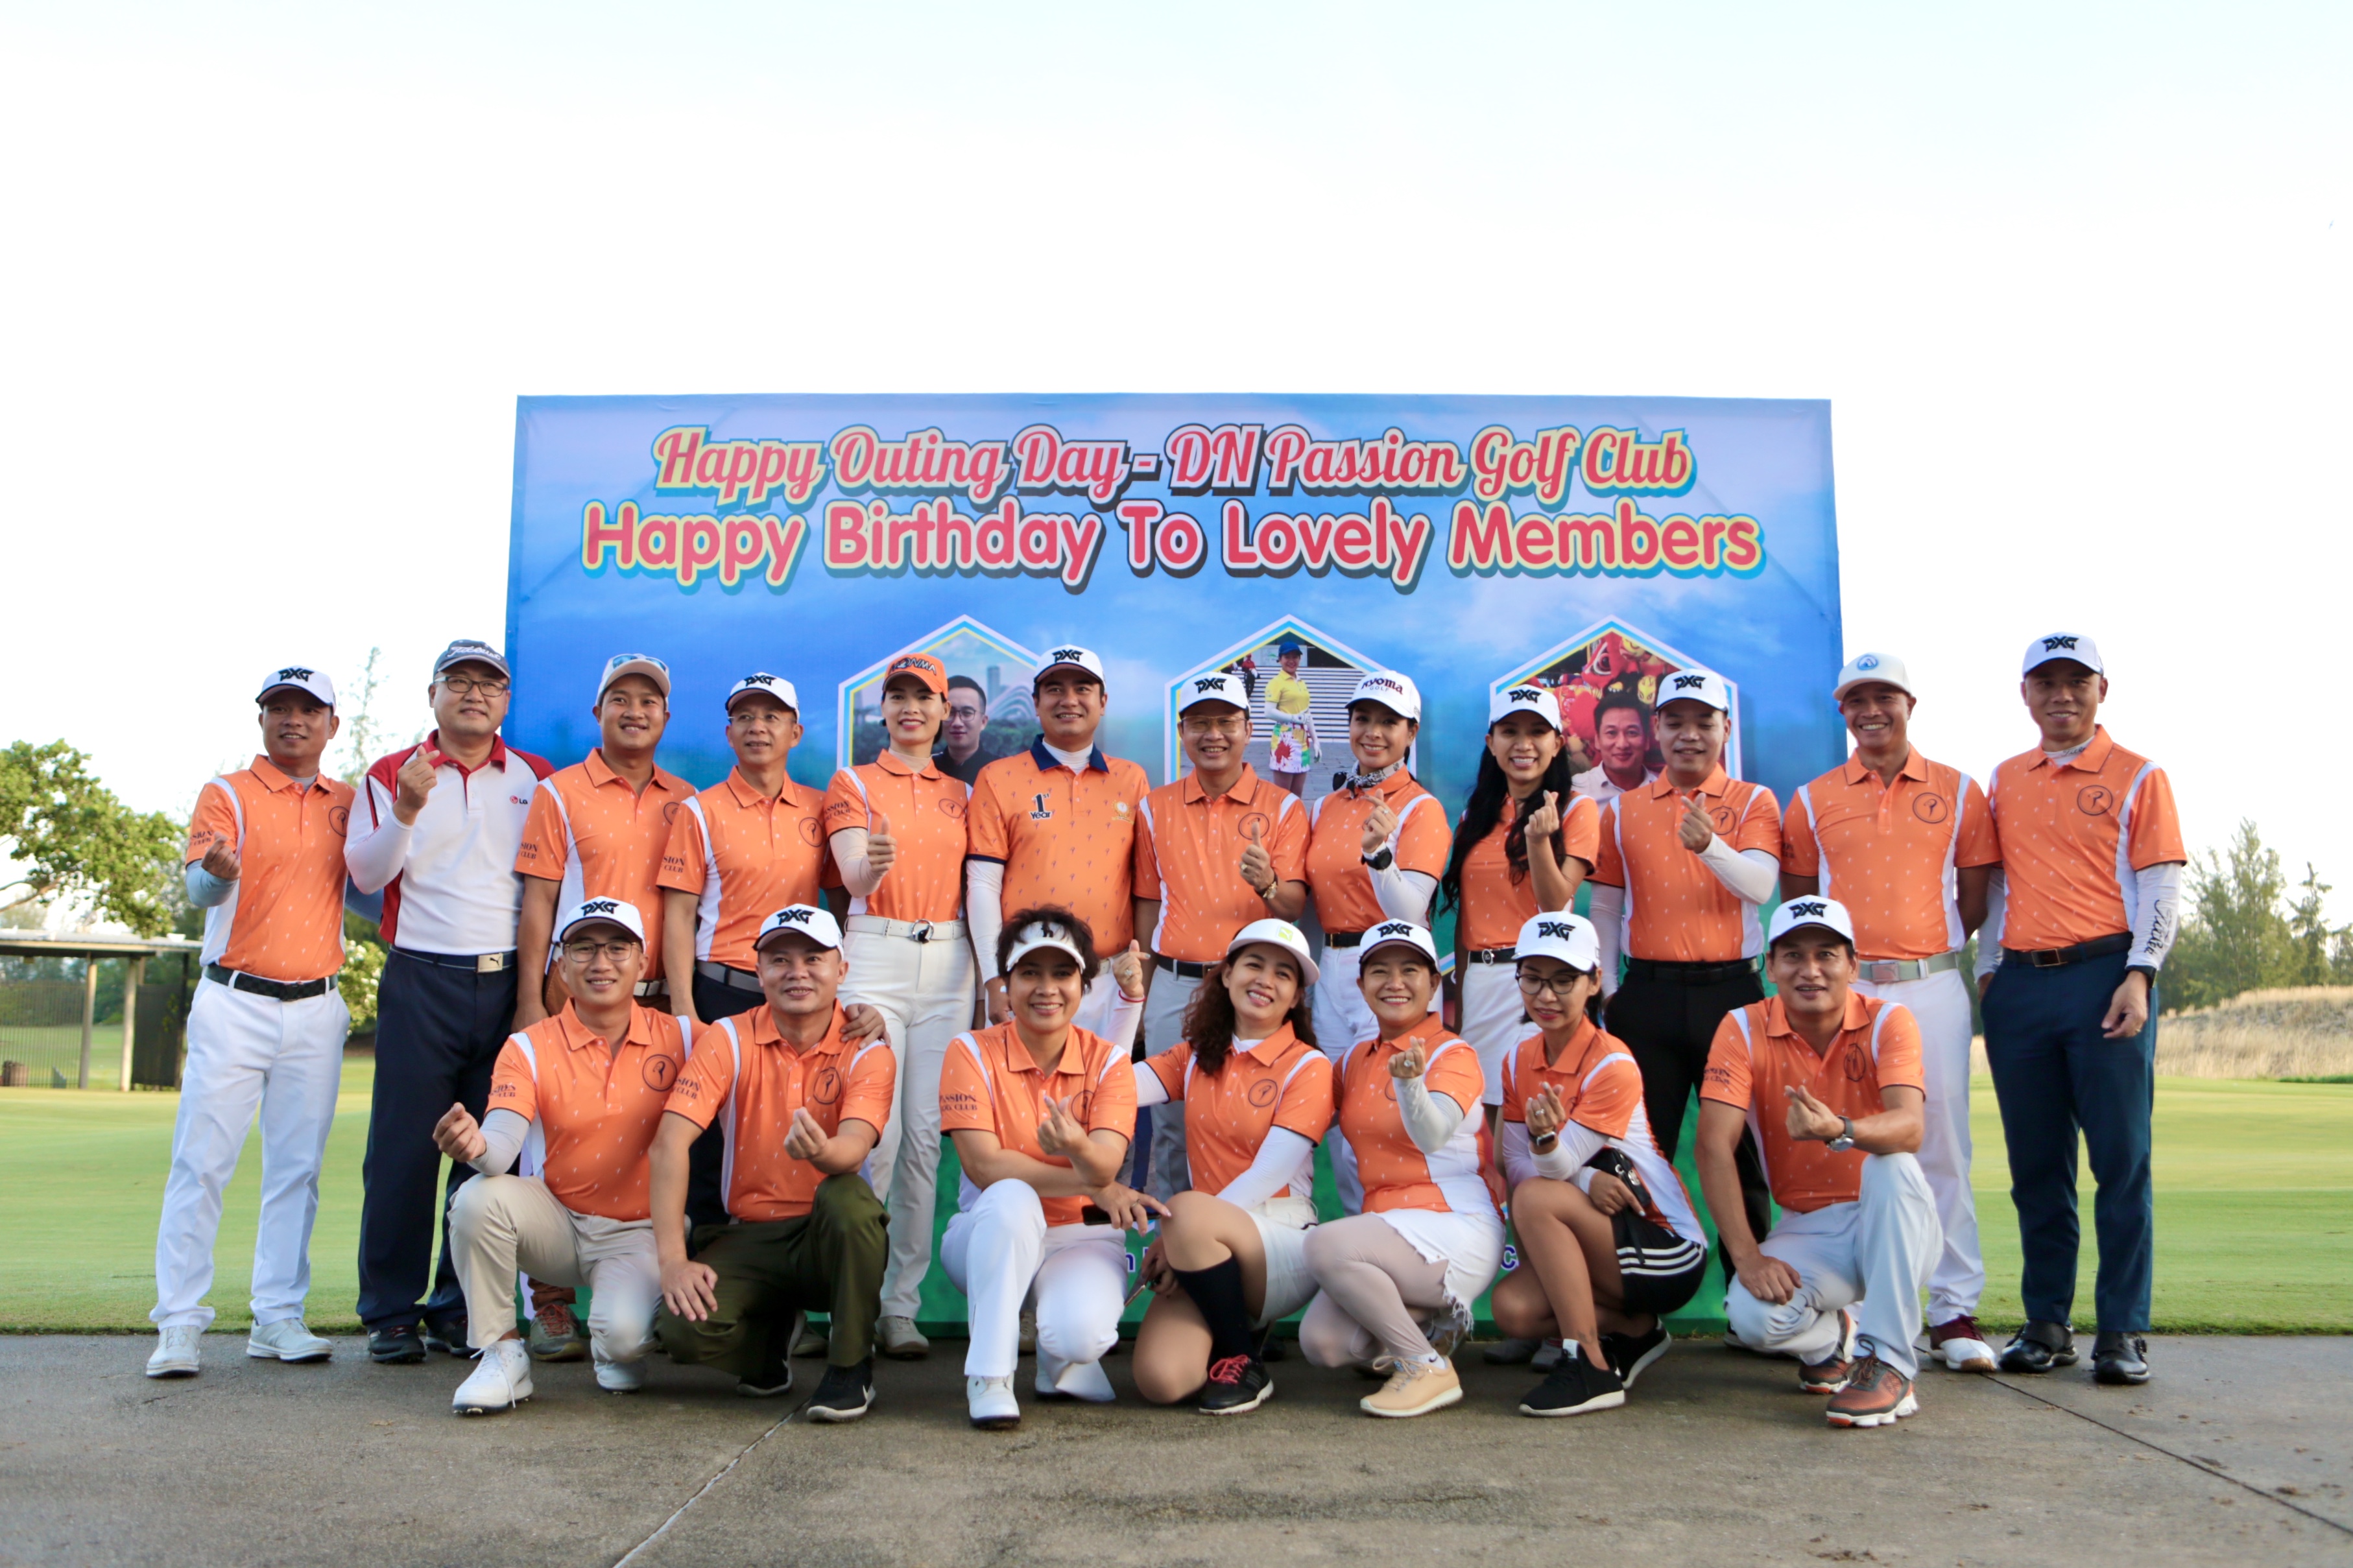 Ra mắt Passion Golf Club Đà Nẵng